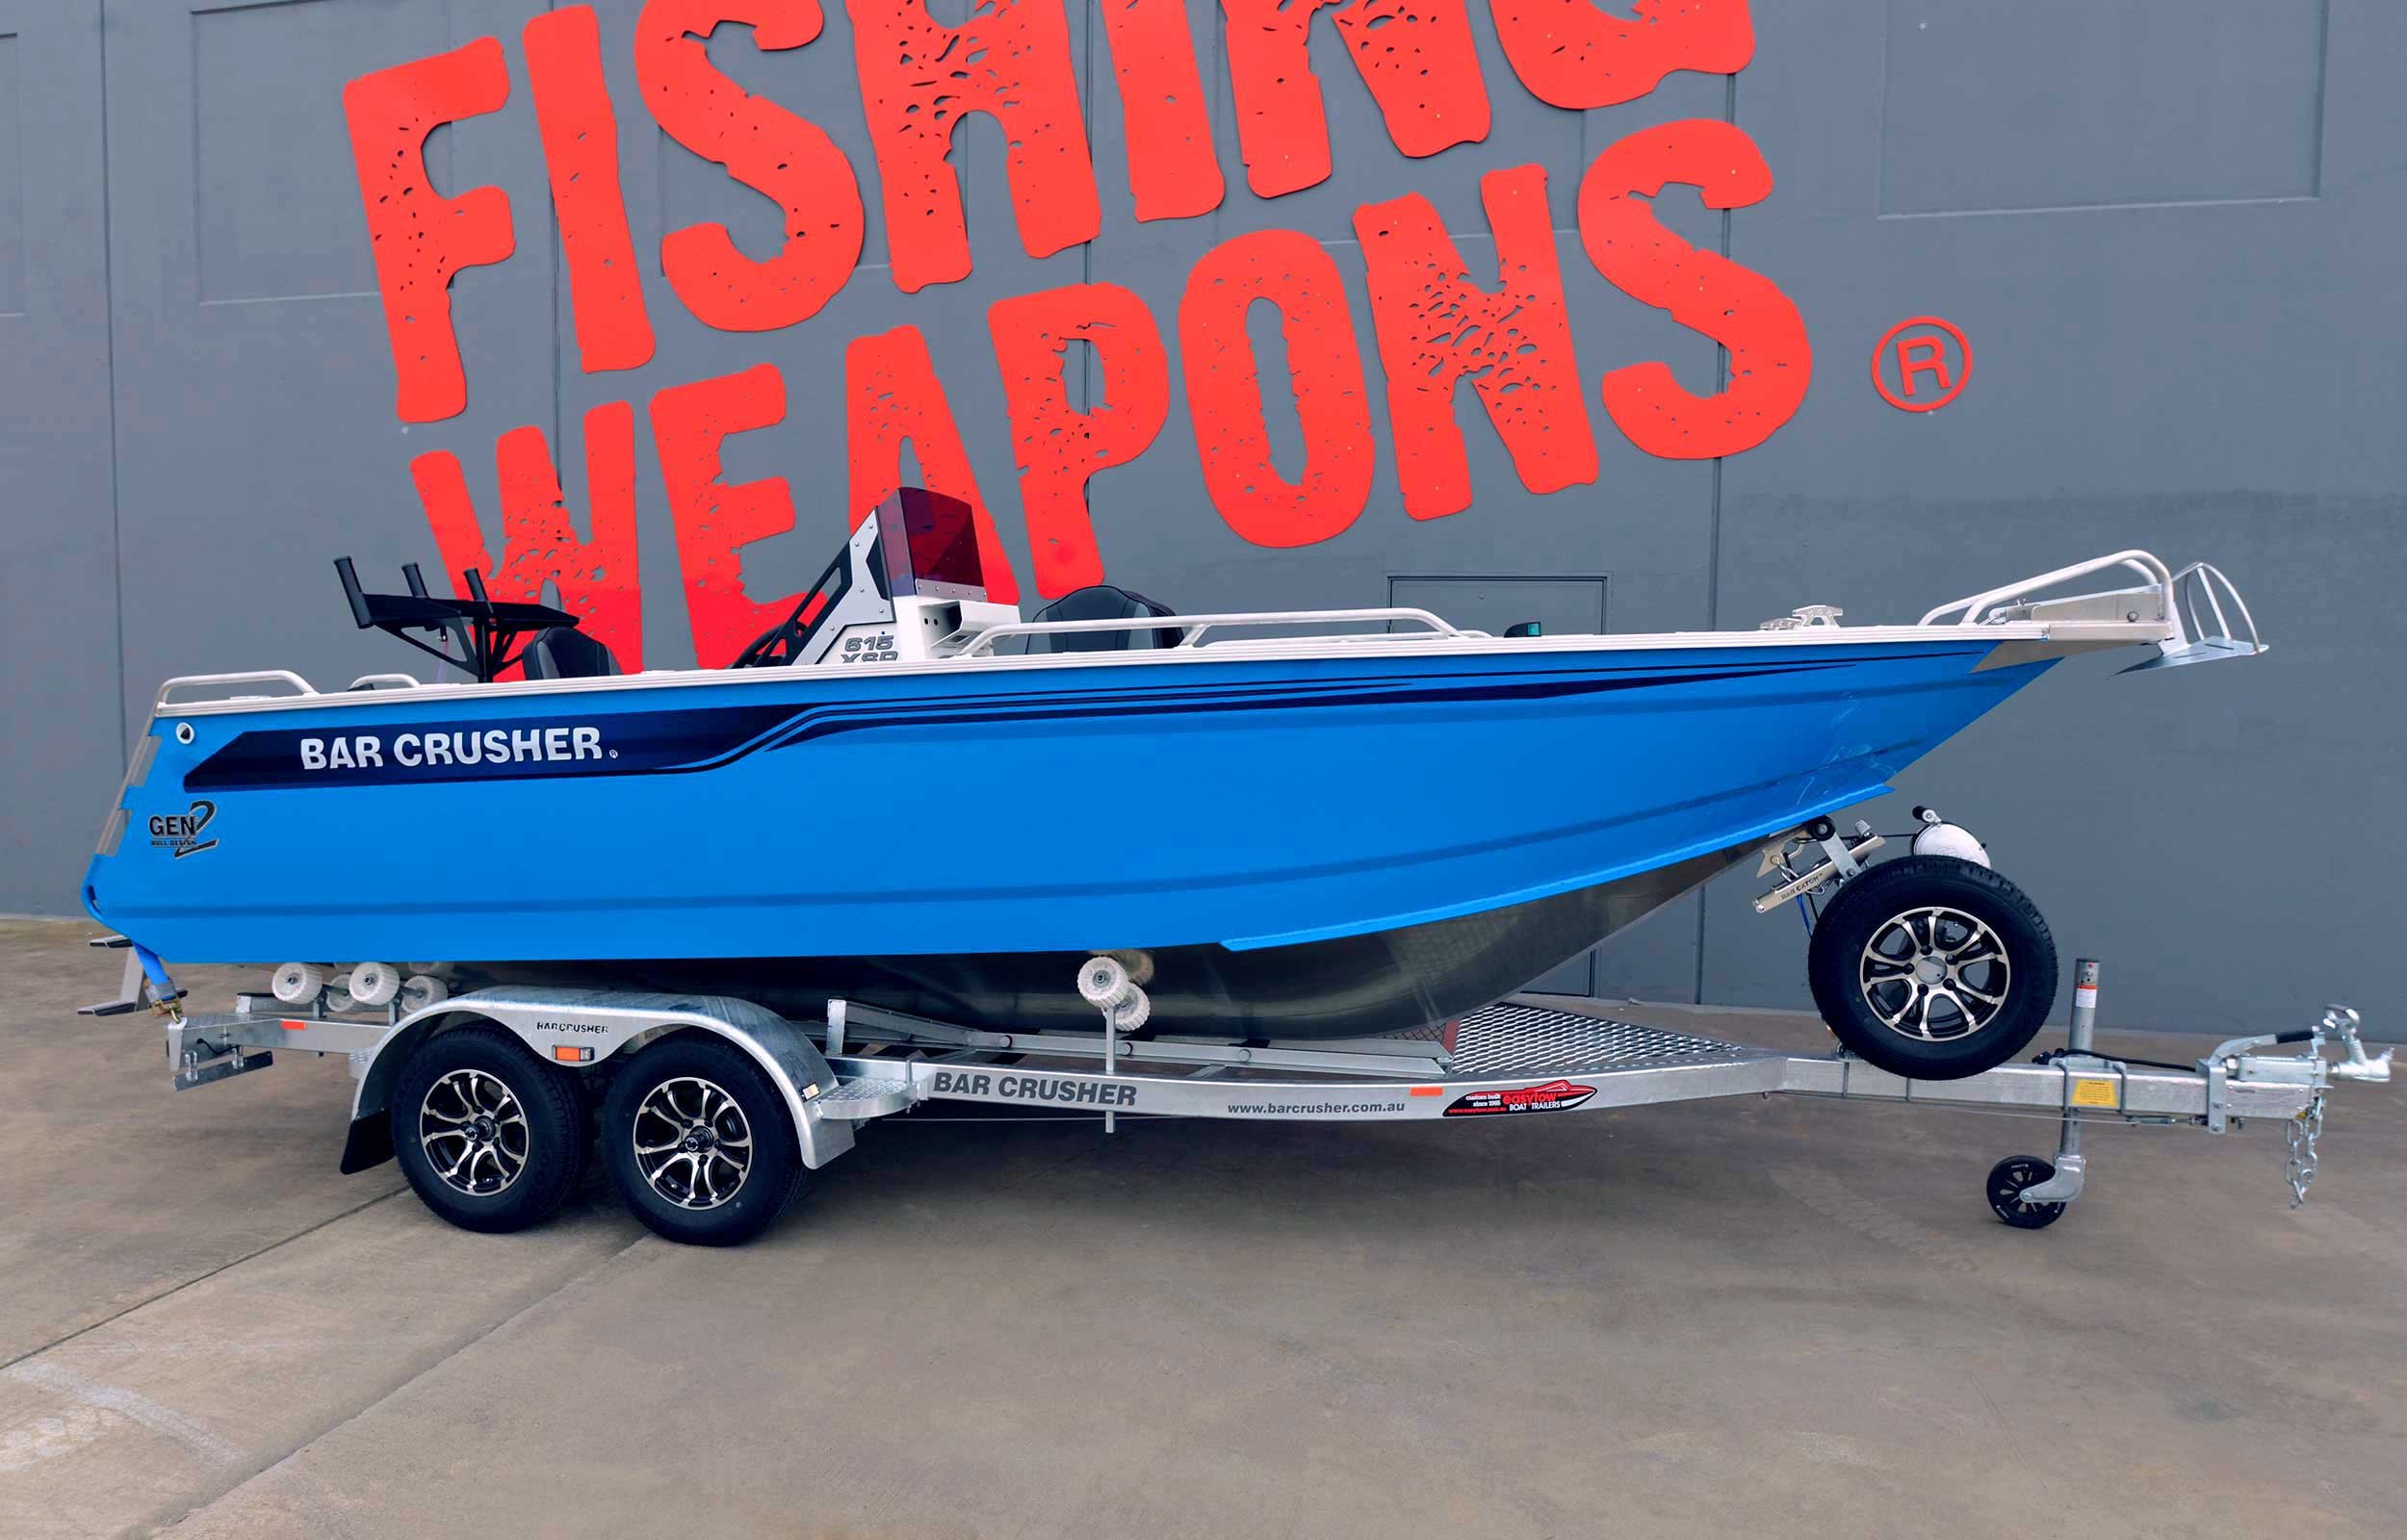 Models Bar Crusher 615xsr Plate Aluminium Fishing Boat 2020 Web 1 3